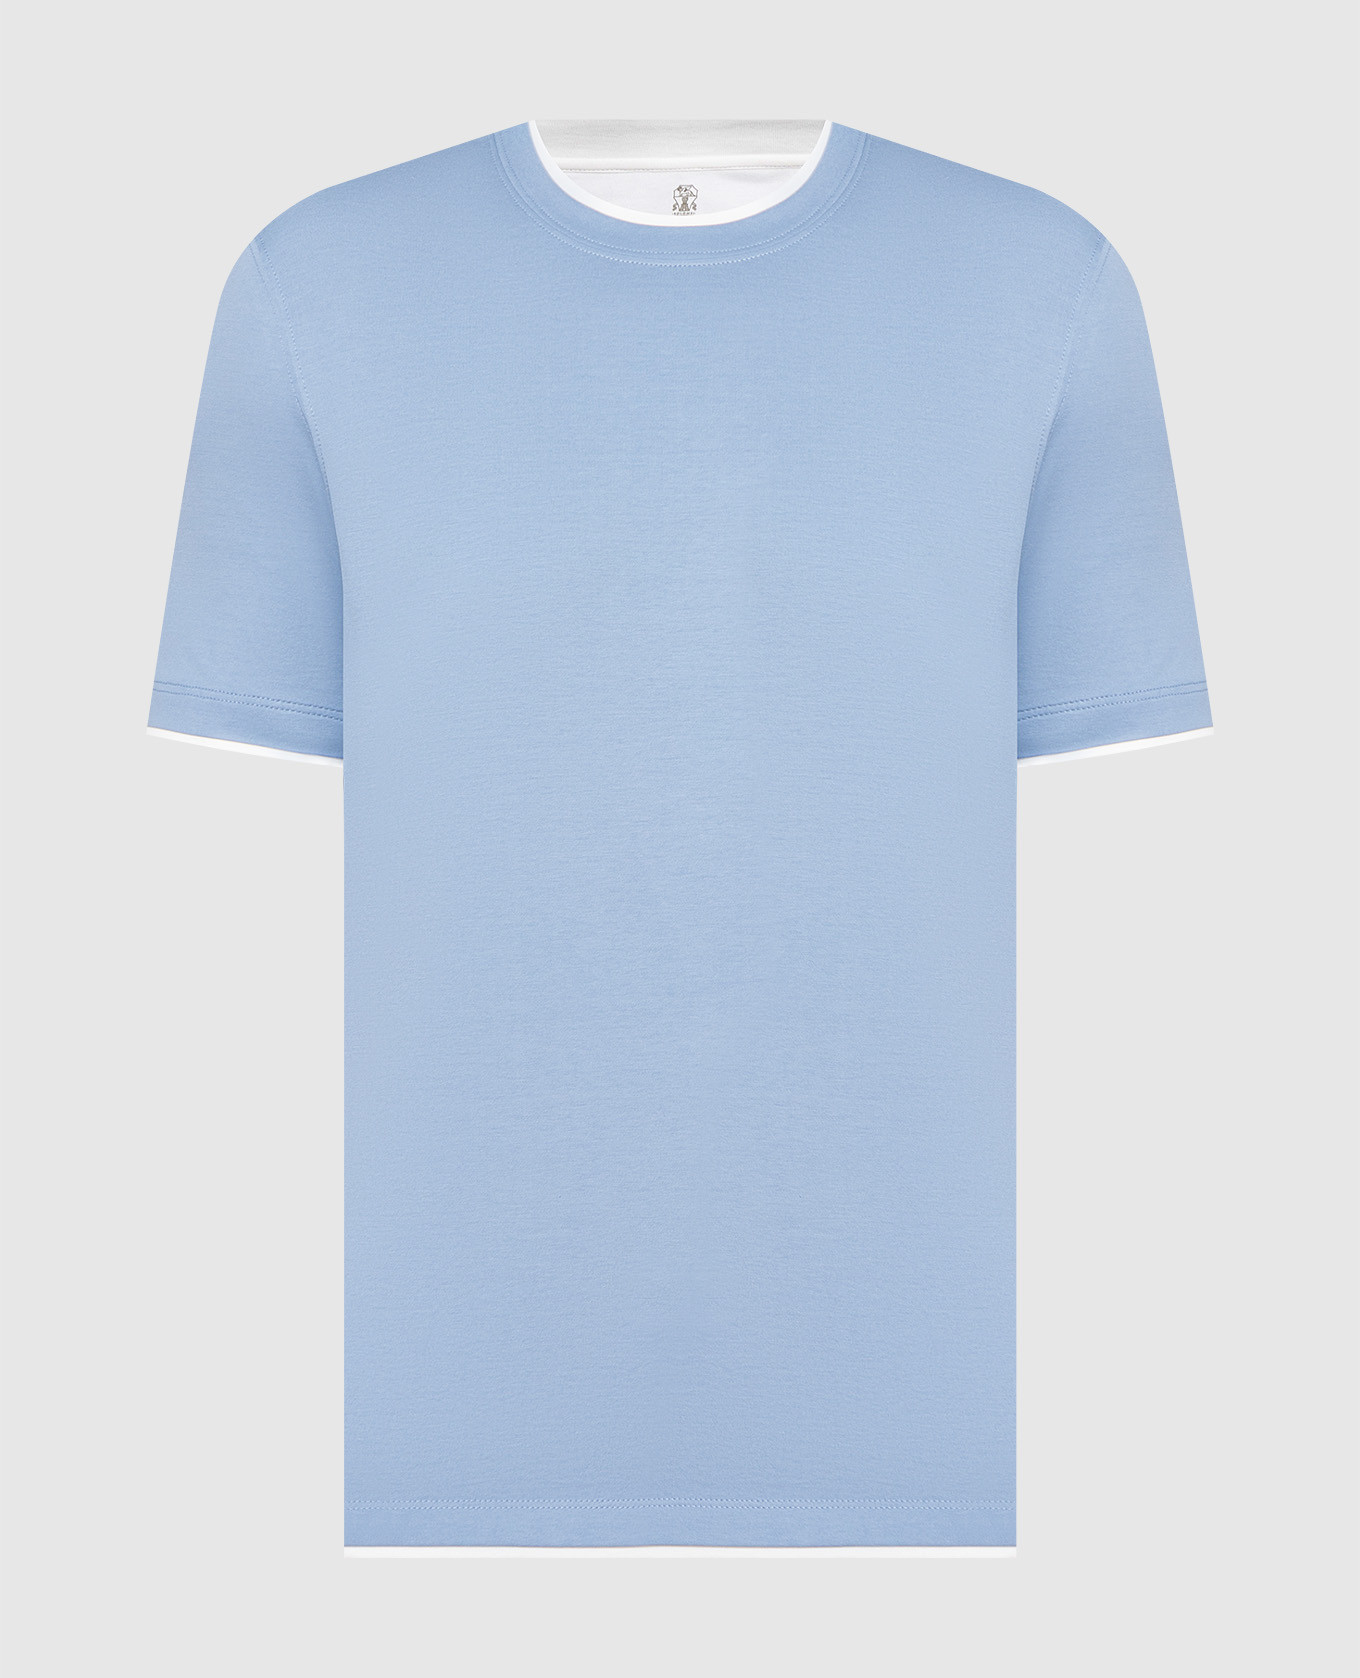 Голубая футболка с эффектом наложения слоев